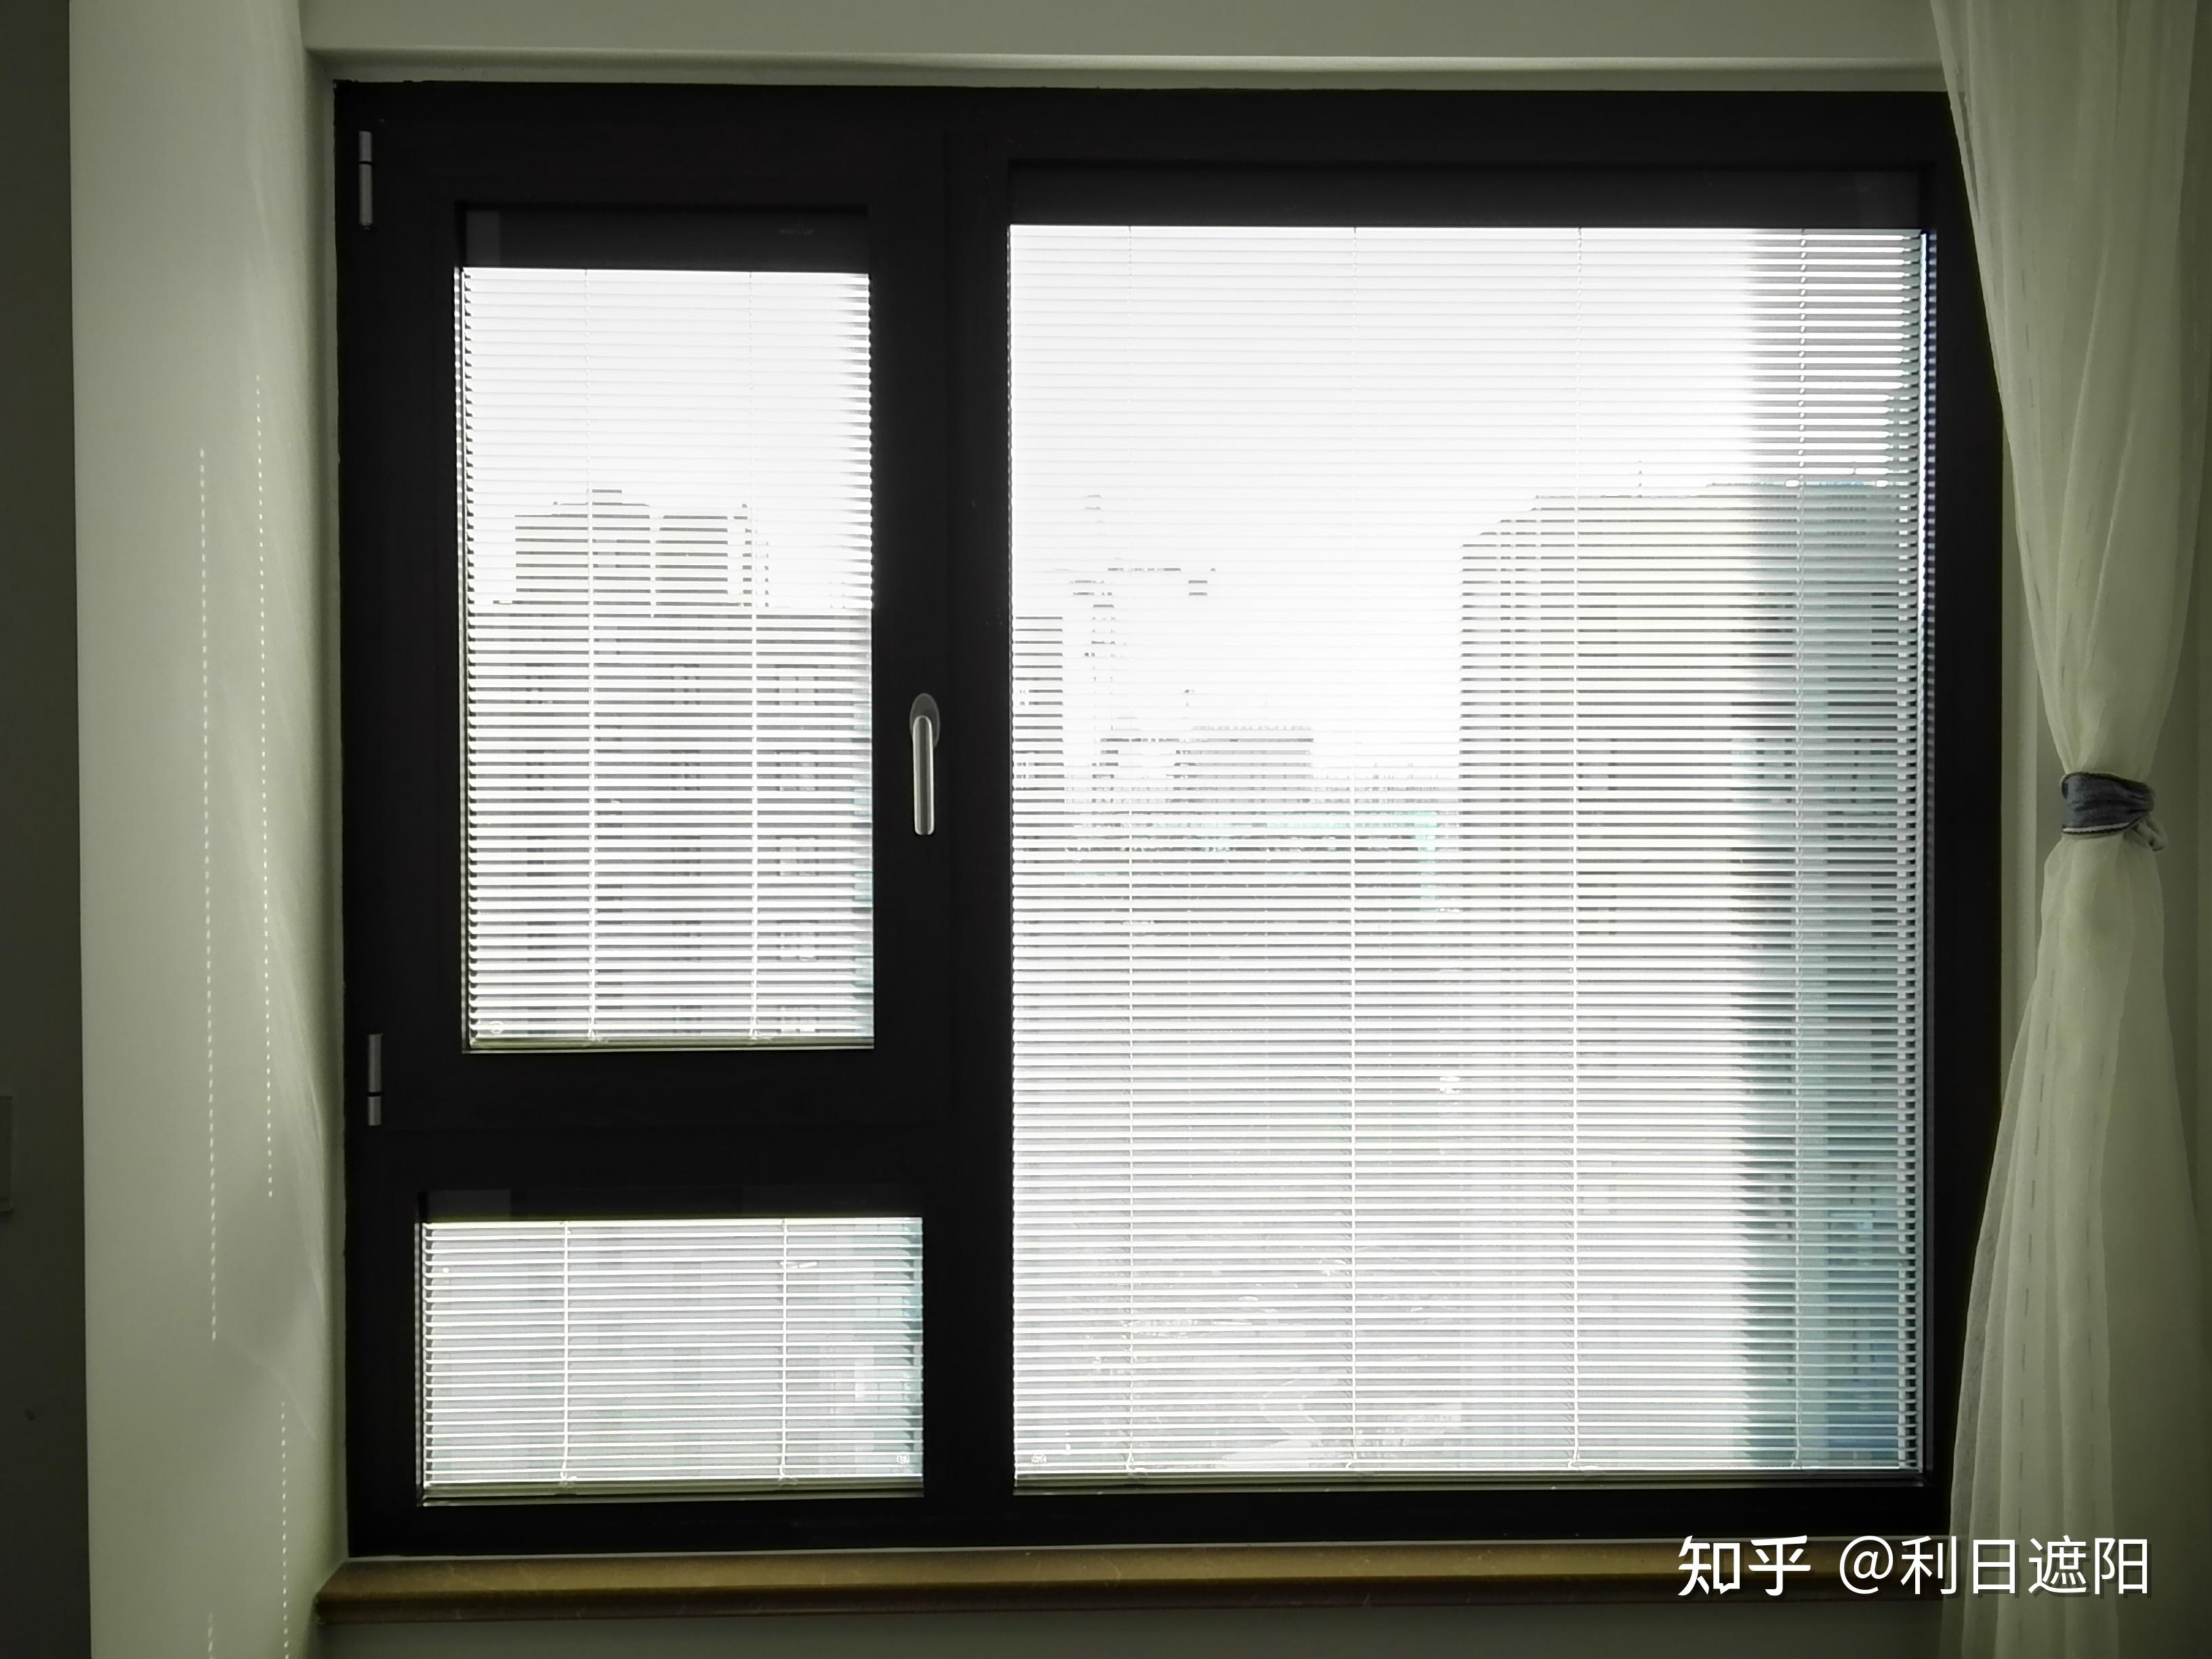 中空玻璃内置百叶门窗能使噪音降得更低,最低可达到36分贝